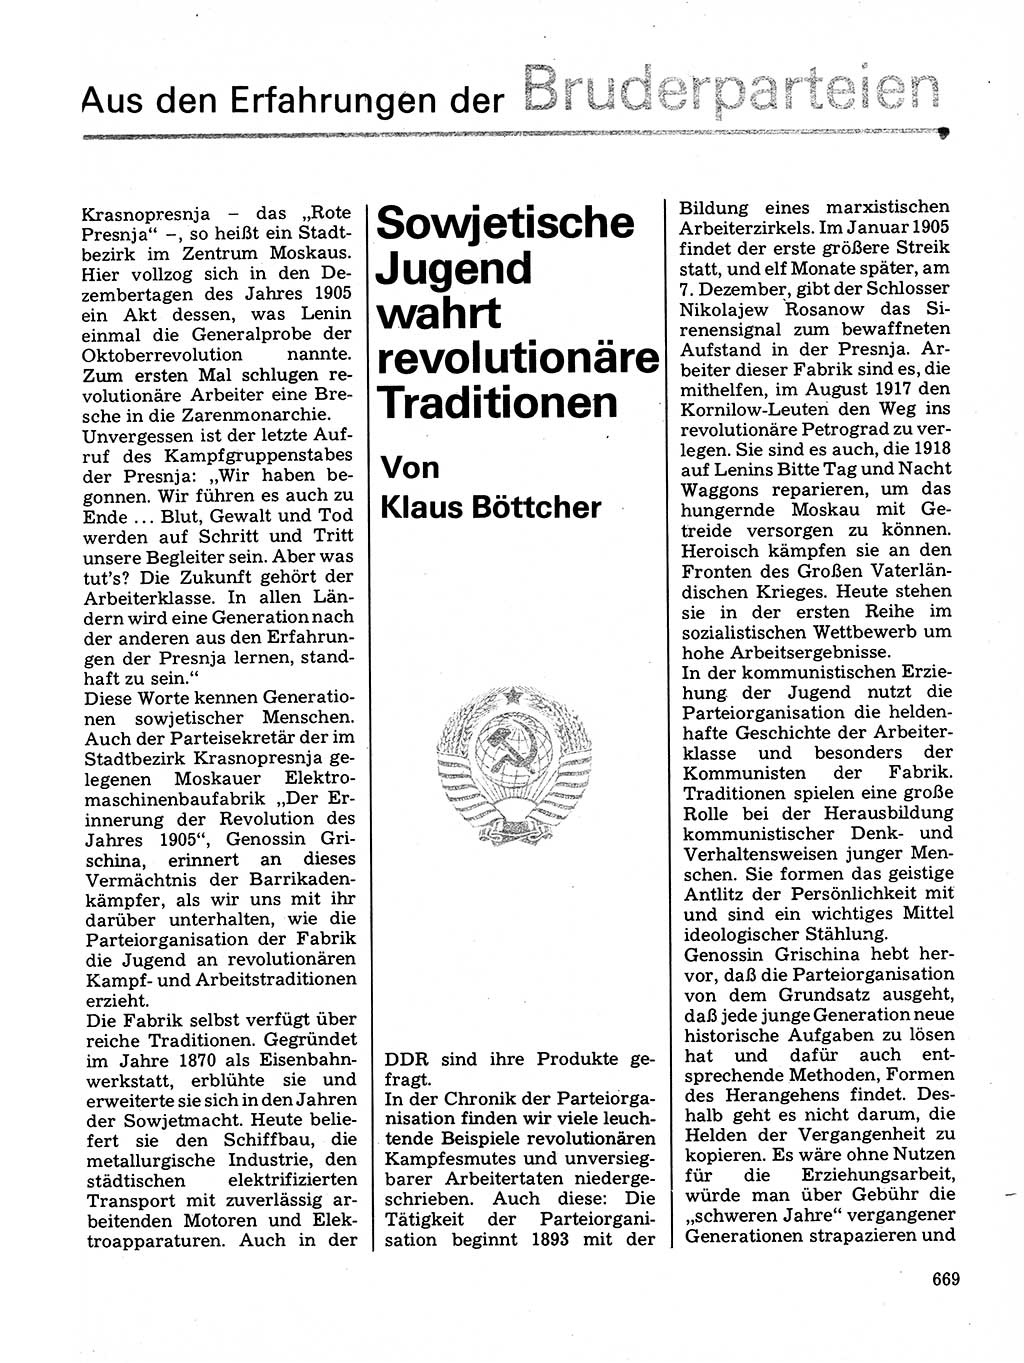 Neuer Weg (NW), Organ des Zentralkomitees (ZK) der SED (Sozialistische Einheitspartei Deutschlands) für Fragen des Parteilebens, 32. Jahrgang [Deutsche Demokratische Republik (DDR)] 1977, Seite 669 (NW ZK SED DDR 1977, S. 669)